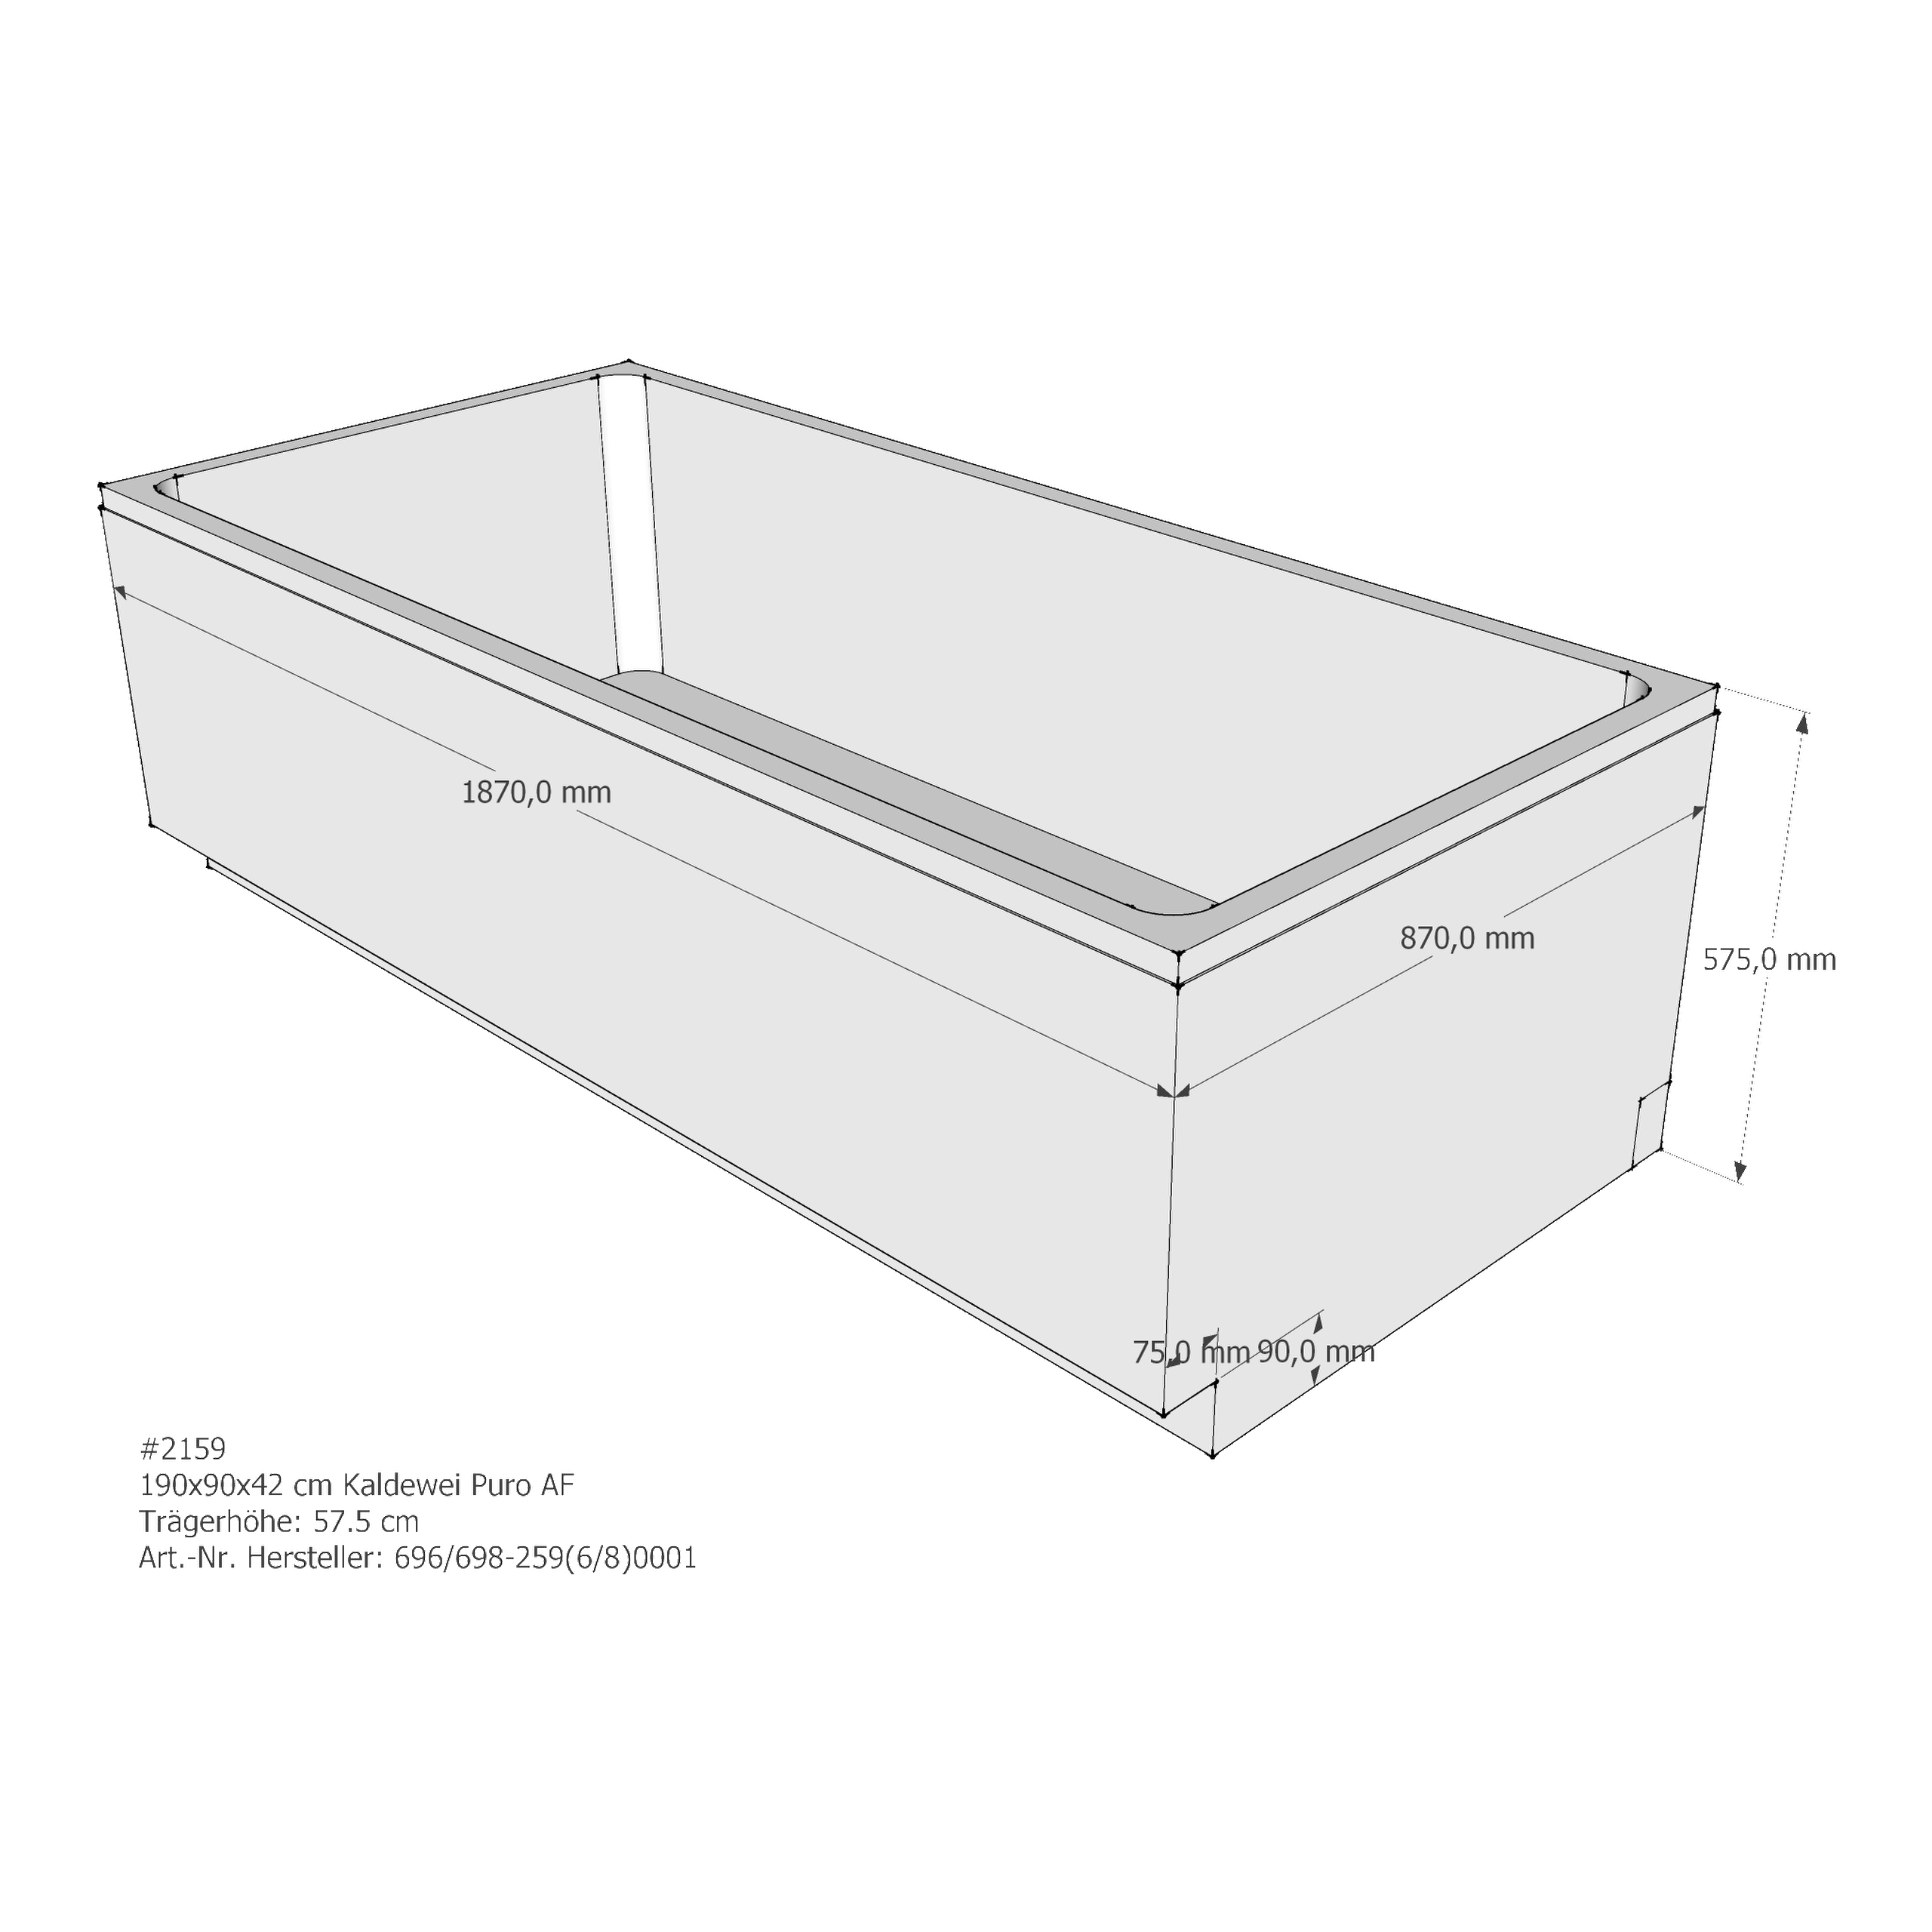 Badewannenträger für Kaldewei Puro /-Star 190 × 90 × 42 cm